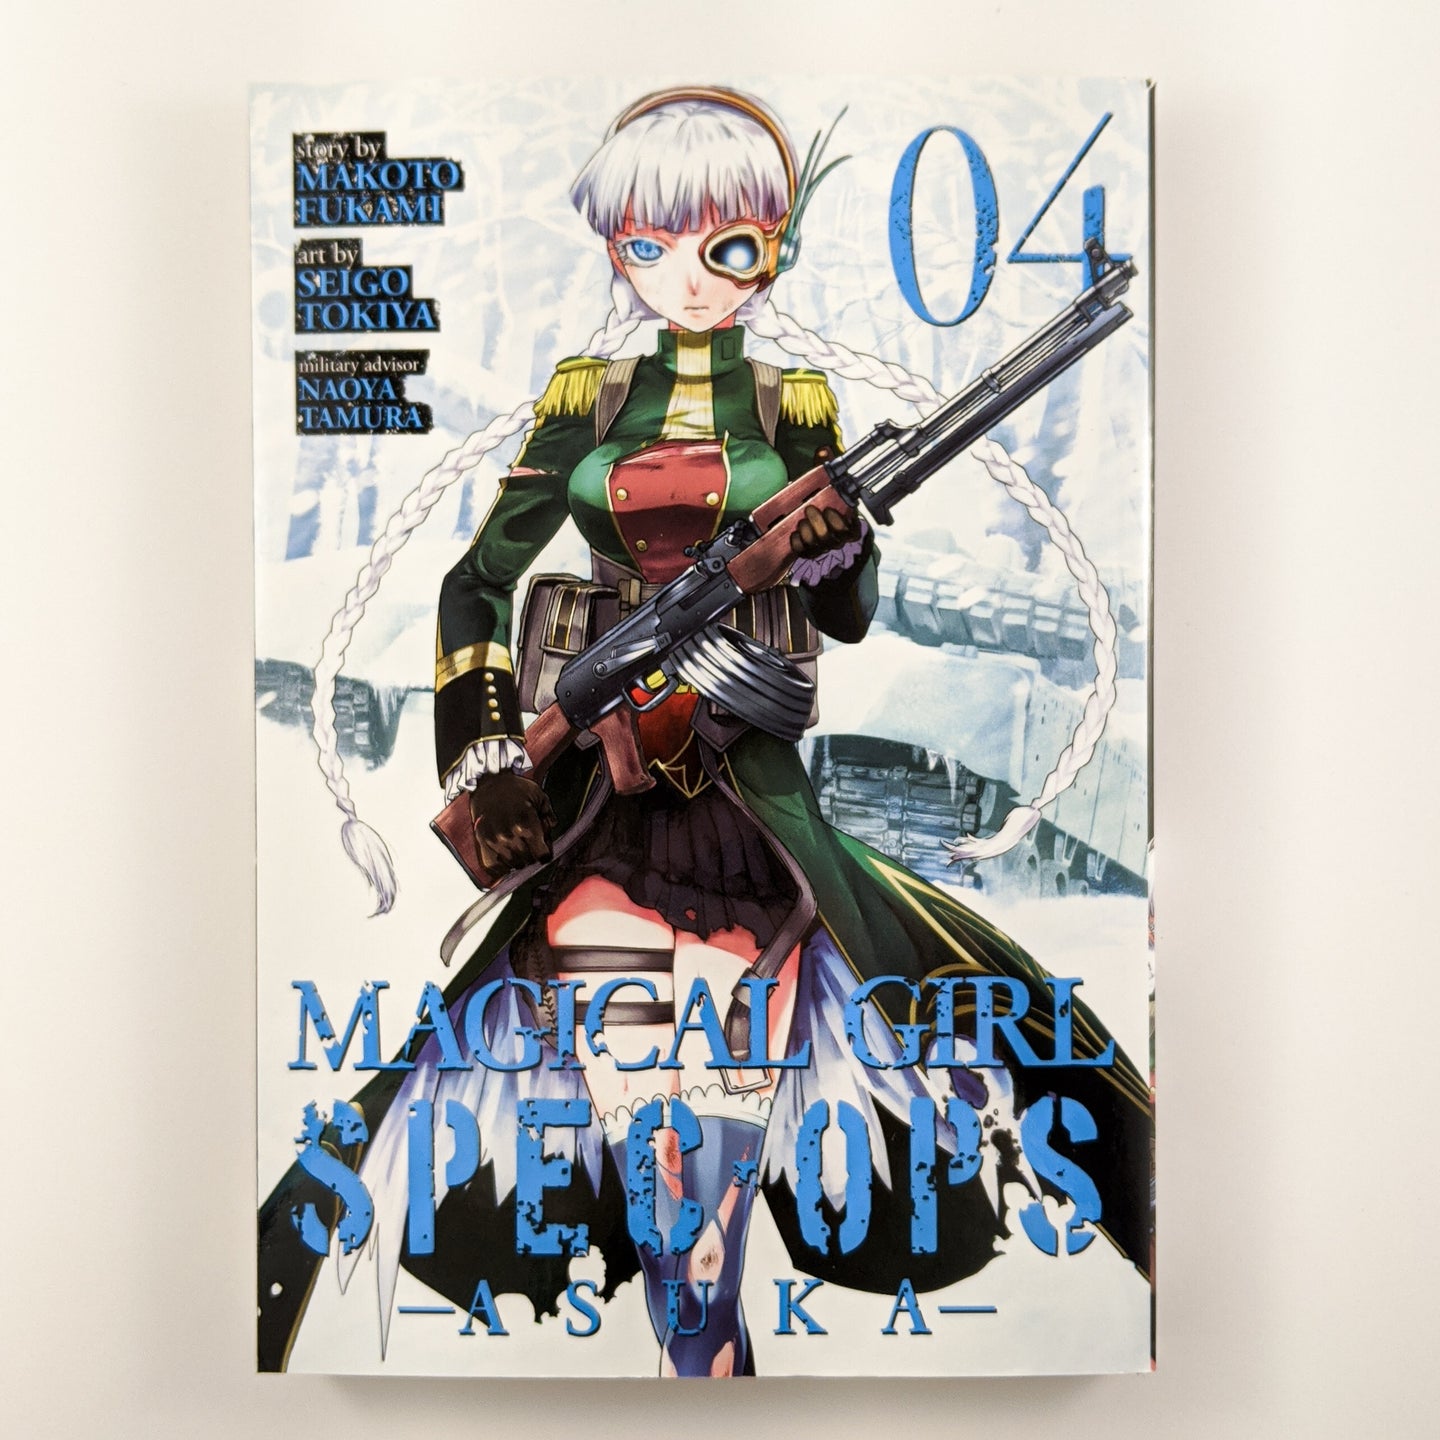 Magical Girl Special Ops: Asuka Volume 4. Manga by Makoto Fukami and Seigo Tokiya.